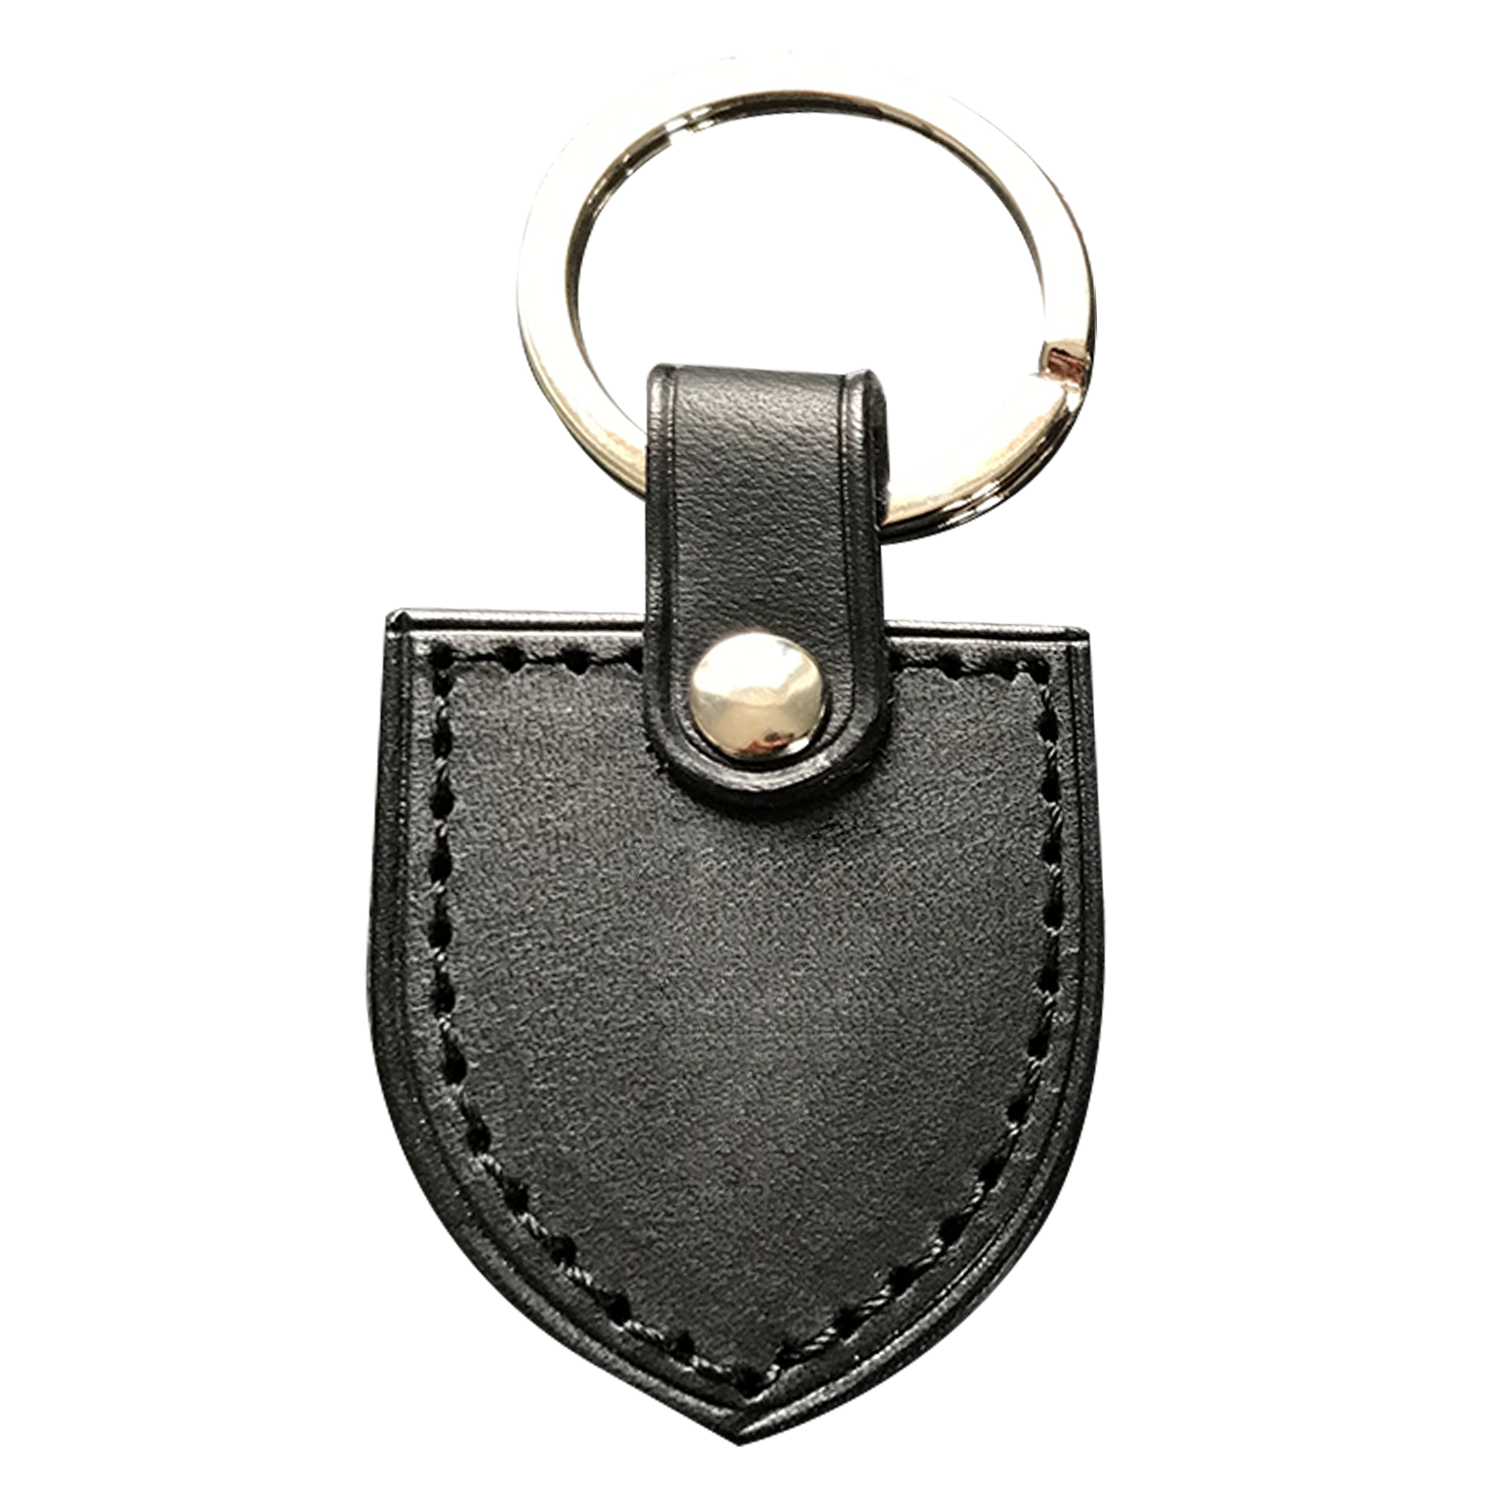 Porte-clés en cuir écusson personnalisable - Made in France